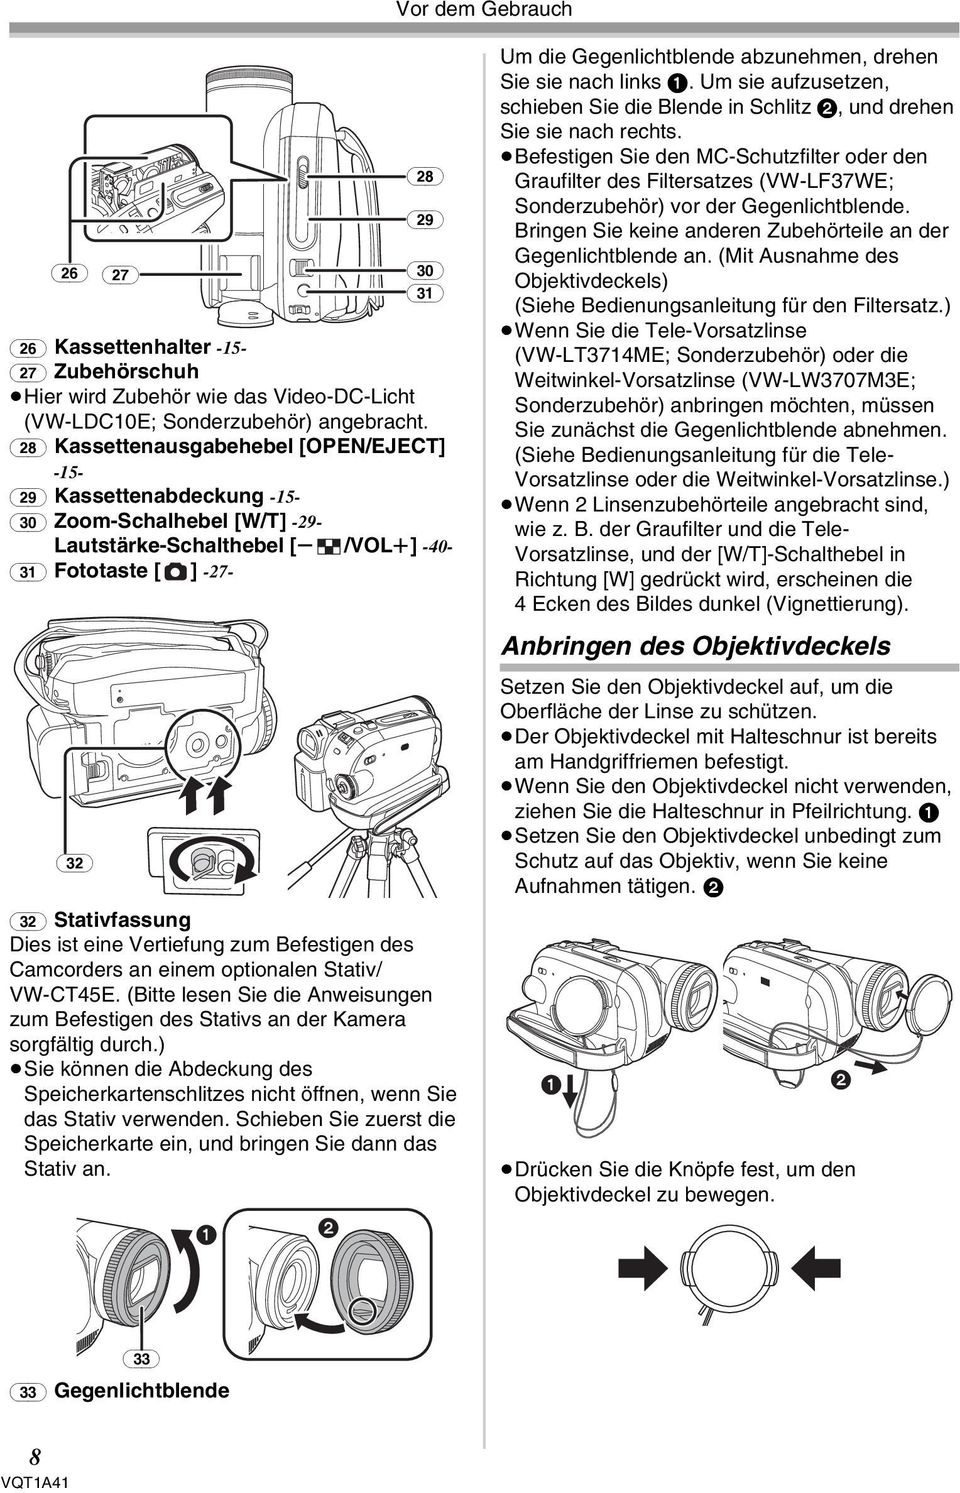 Dies ist eine Vertiefung zum Befestigen des Camcorders an einem optionalen Stativ/ VW-CT45E. (Bitte lesen Sie die Anweisungen zum Befestigen des Stativs an der Kamera sorgfältig durch.